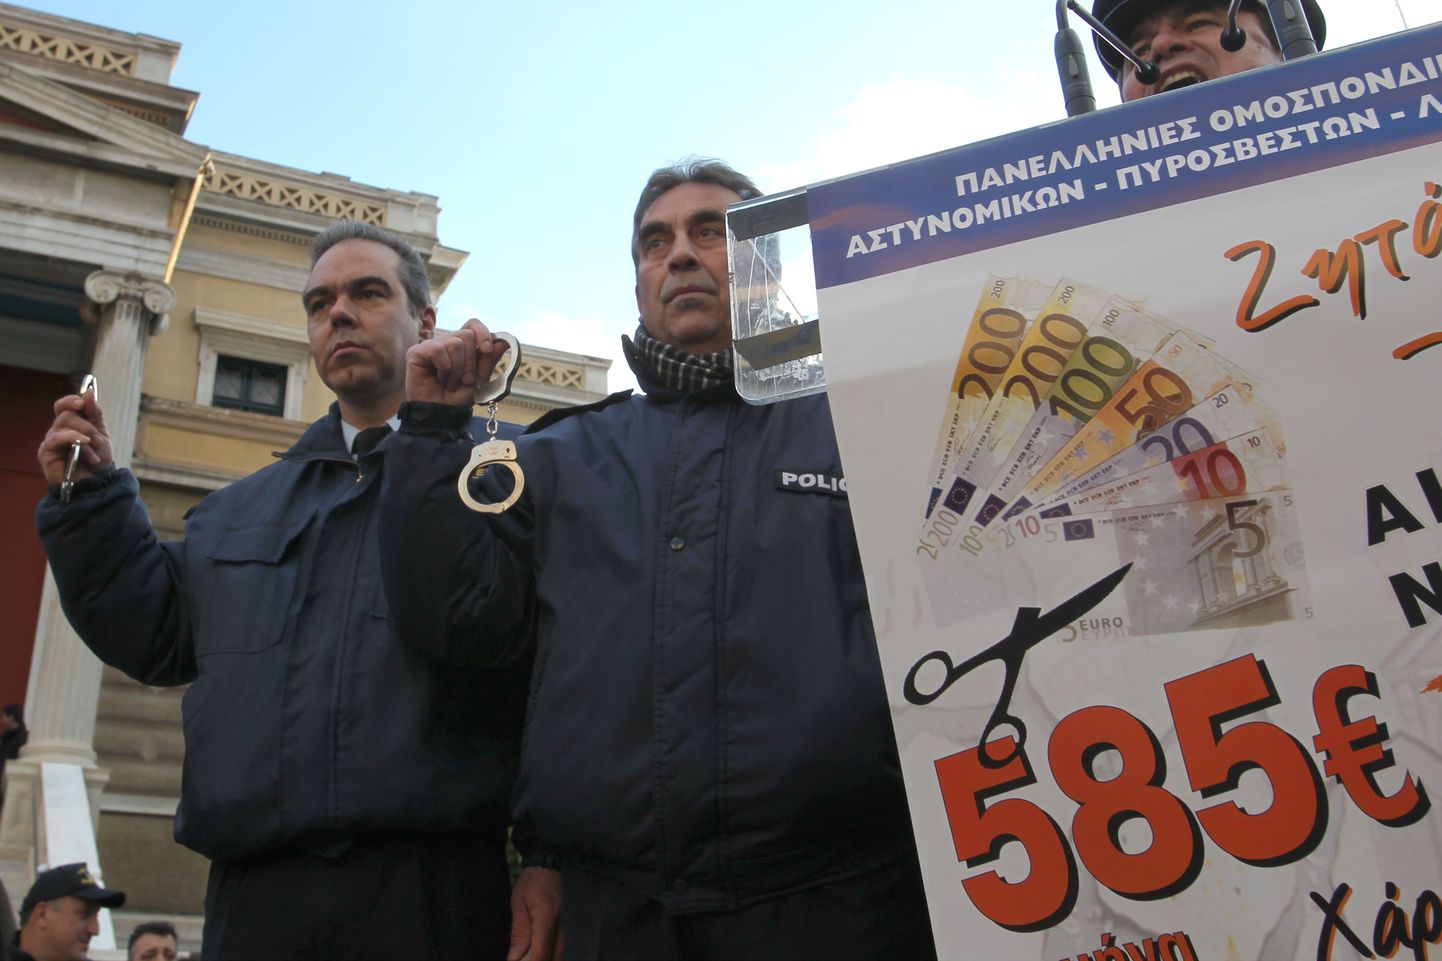 Kreeklasi ootab ees suur palga vähenemine. Fotol protestivad kreeklased